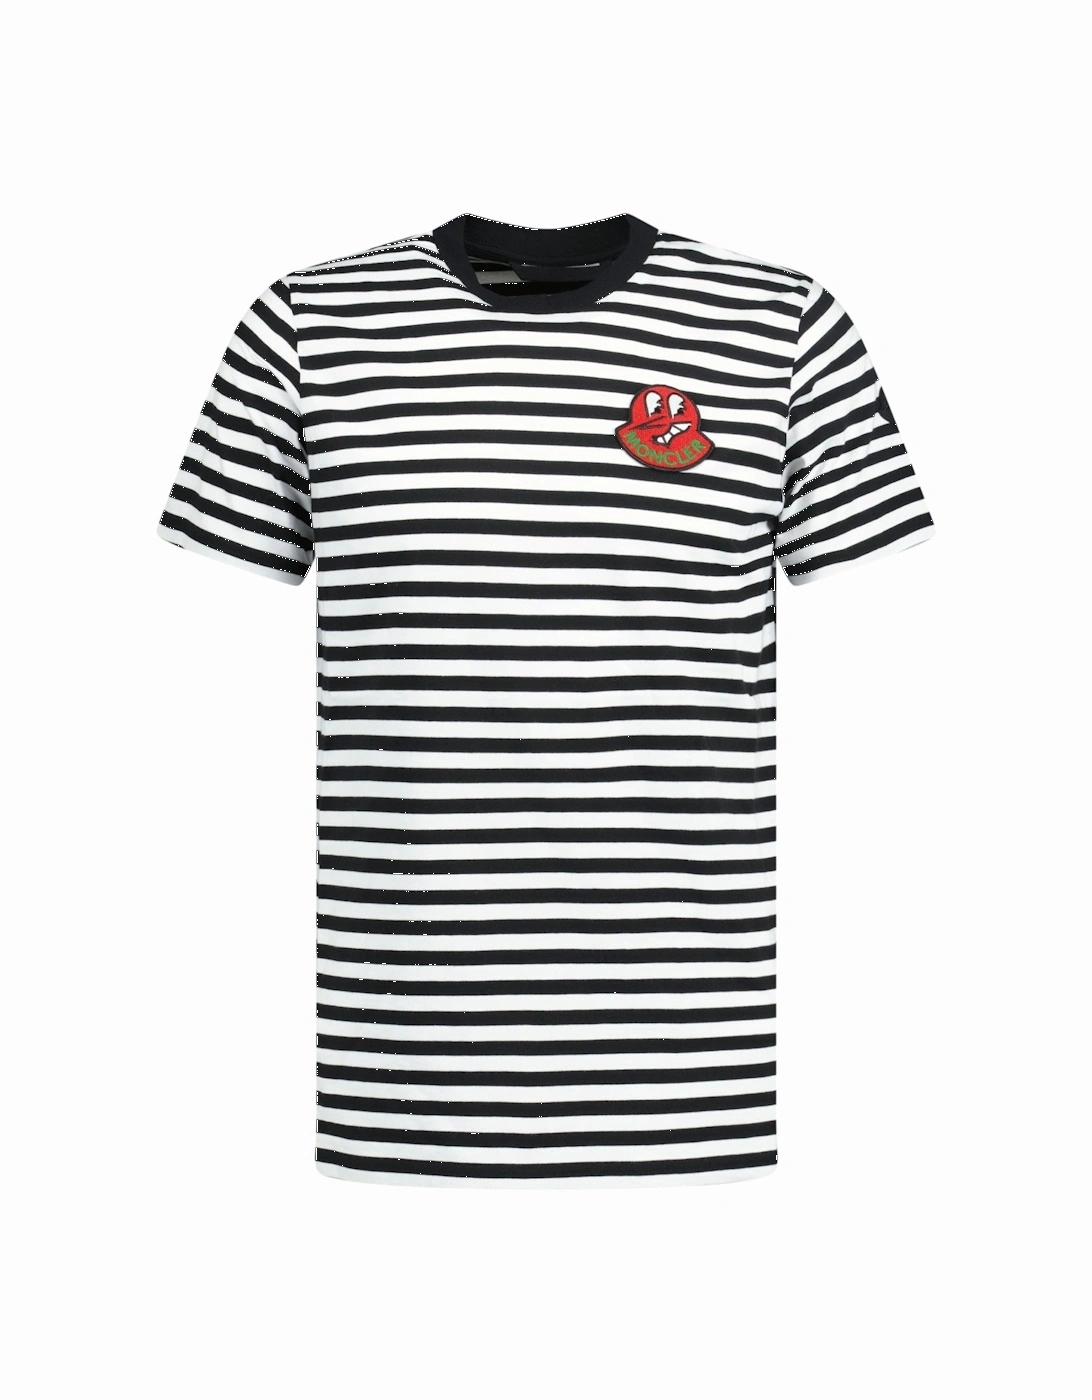 'Rigato' Logo T-Shirt Black & White Stripe, 3 of 2